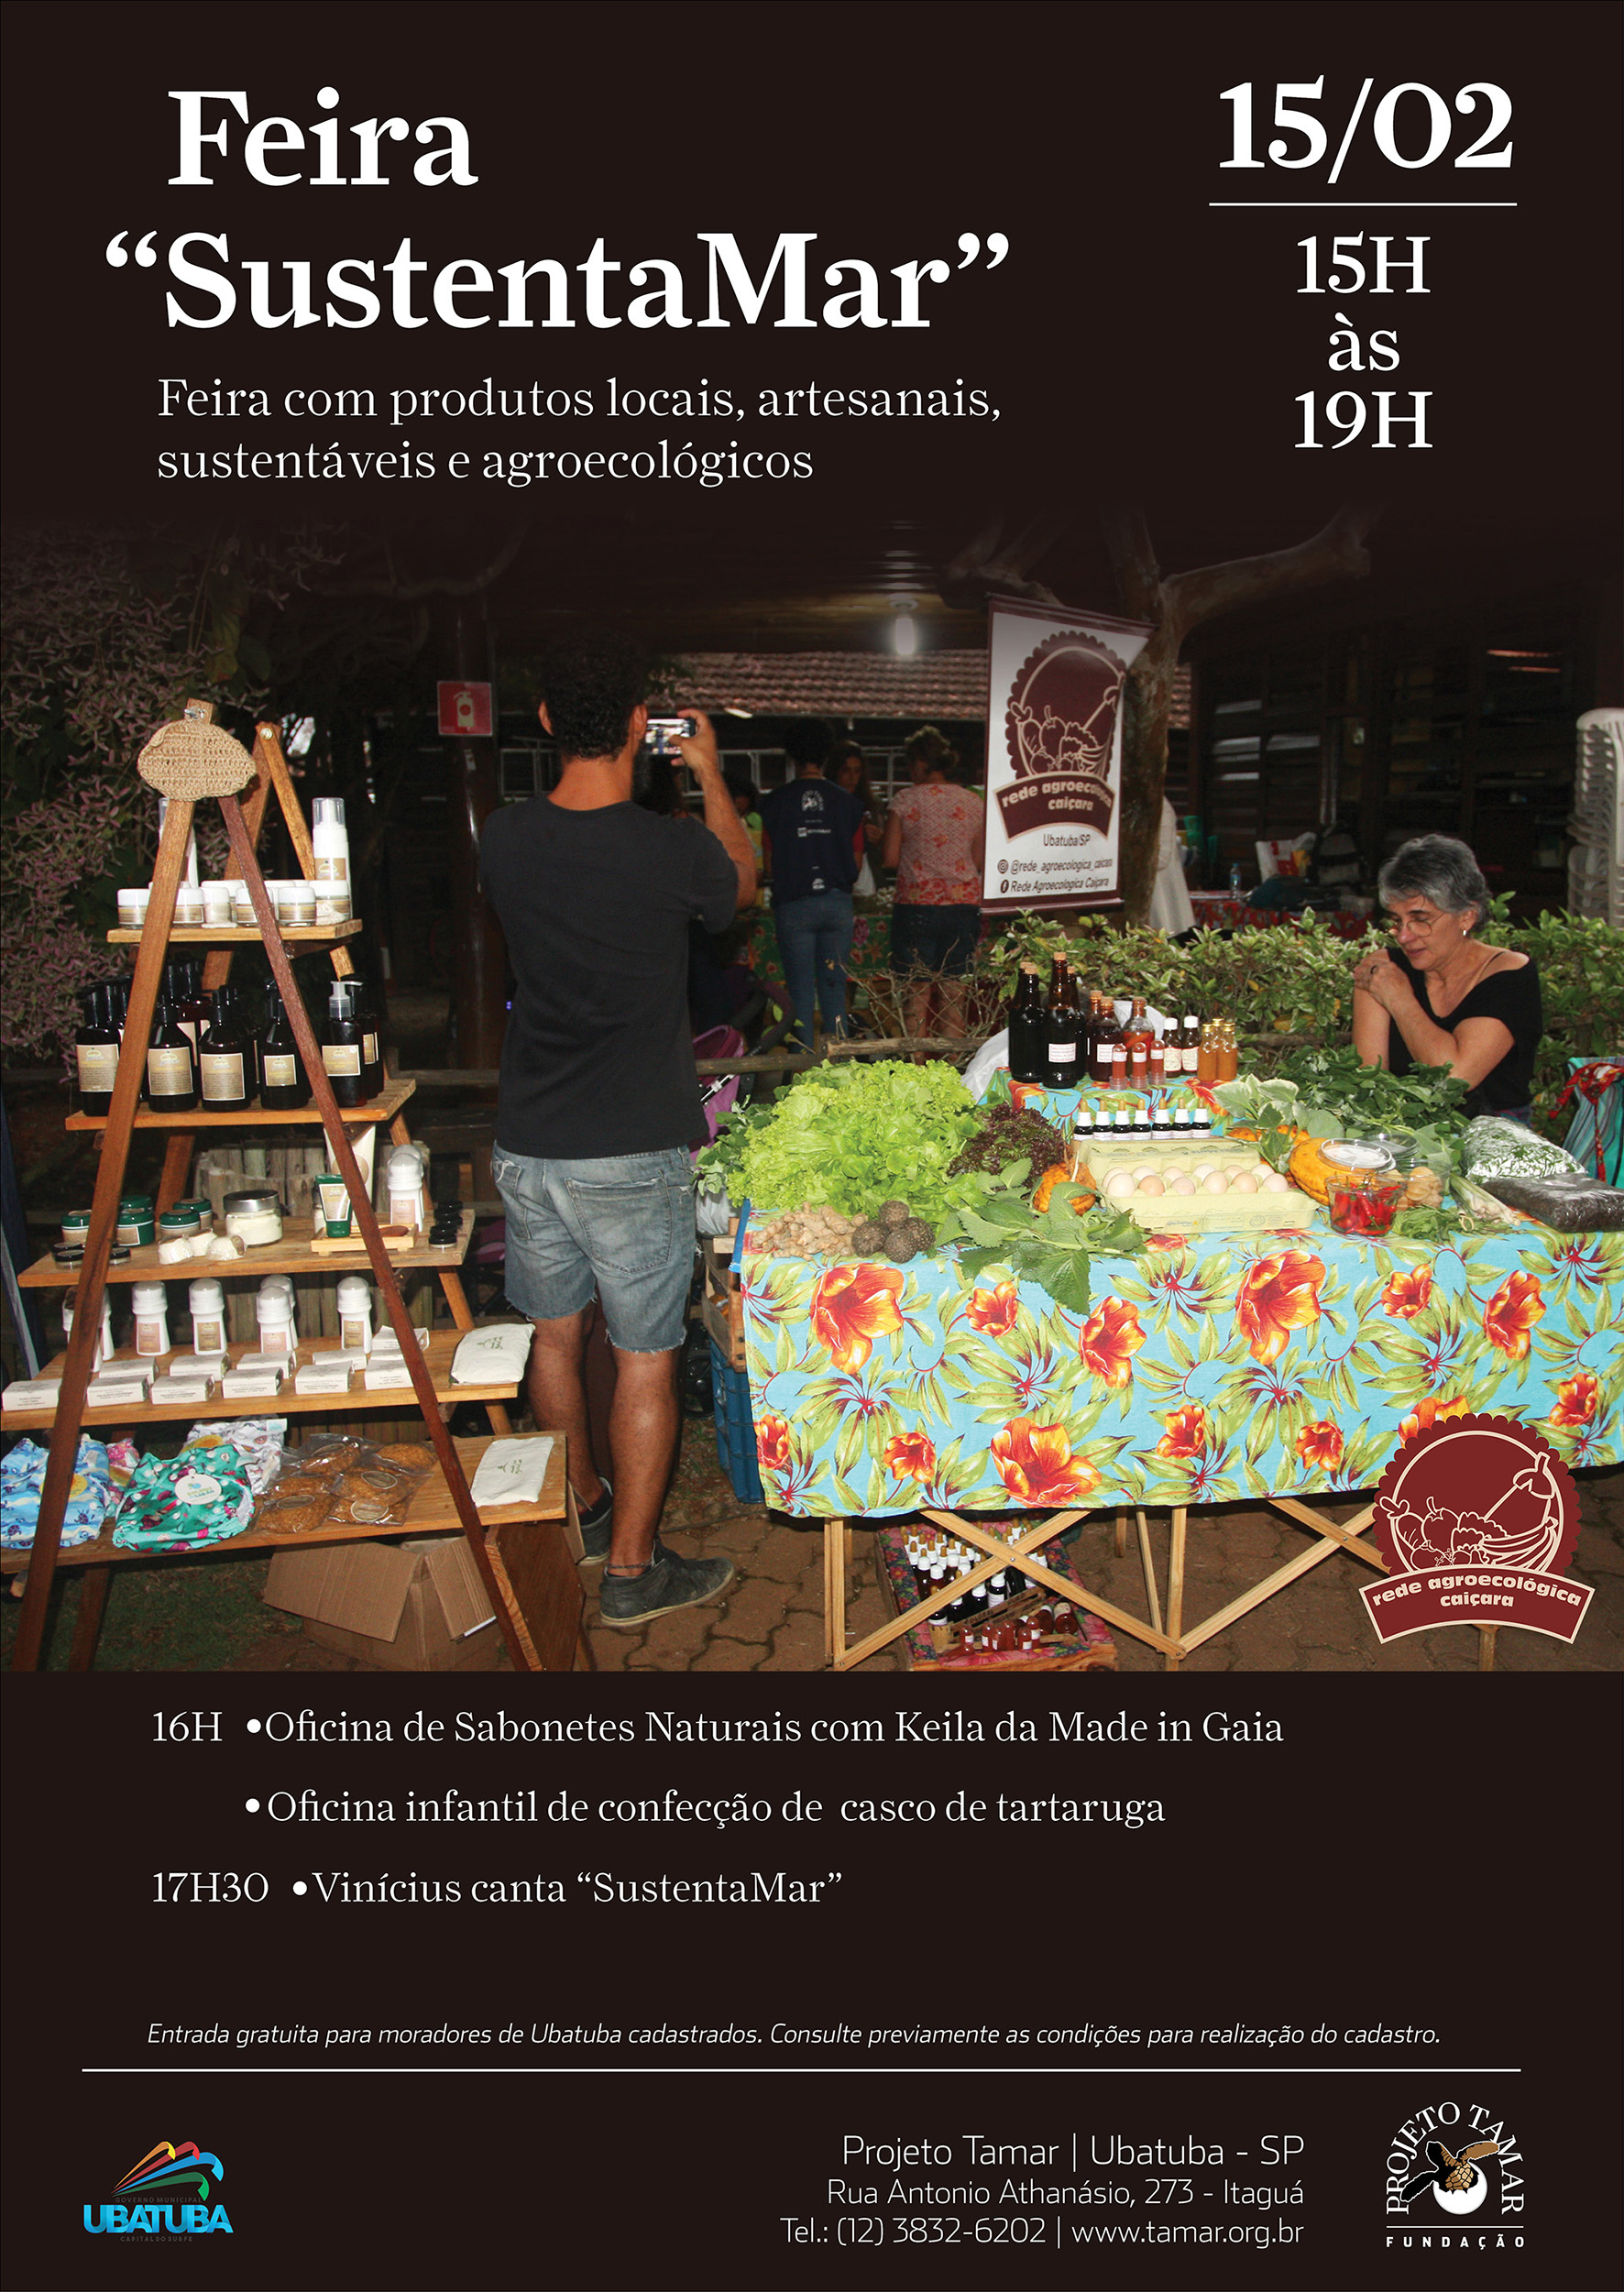 Feira sustentável no Projeto Tamar com produtos locais, artesanais e agroecológicos